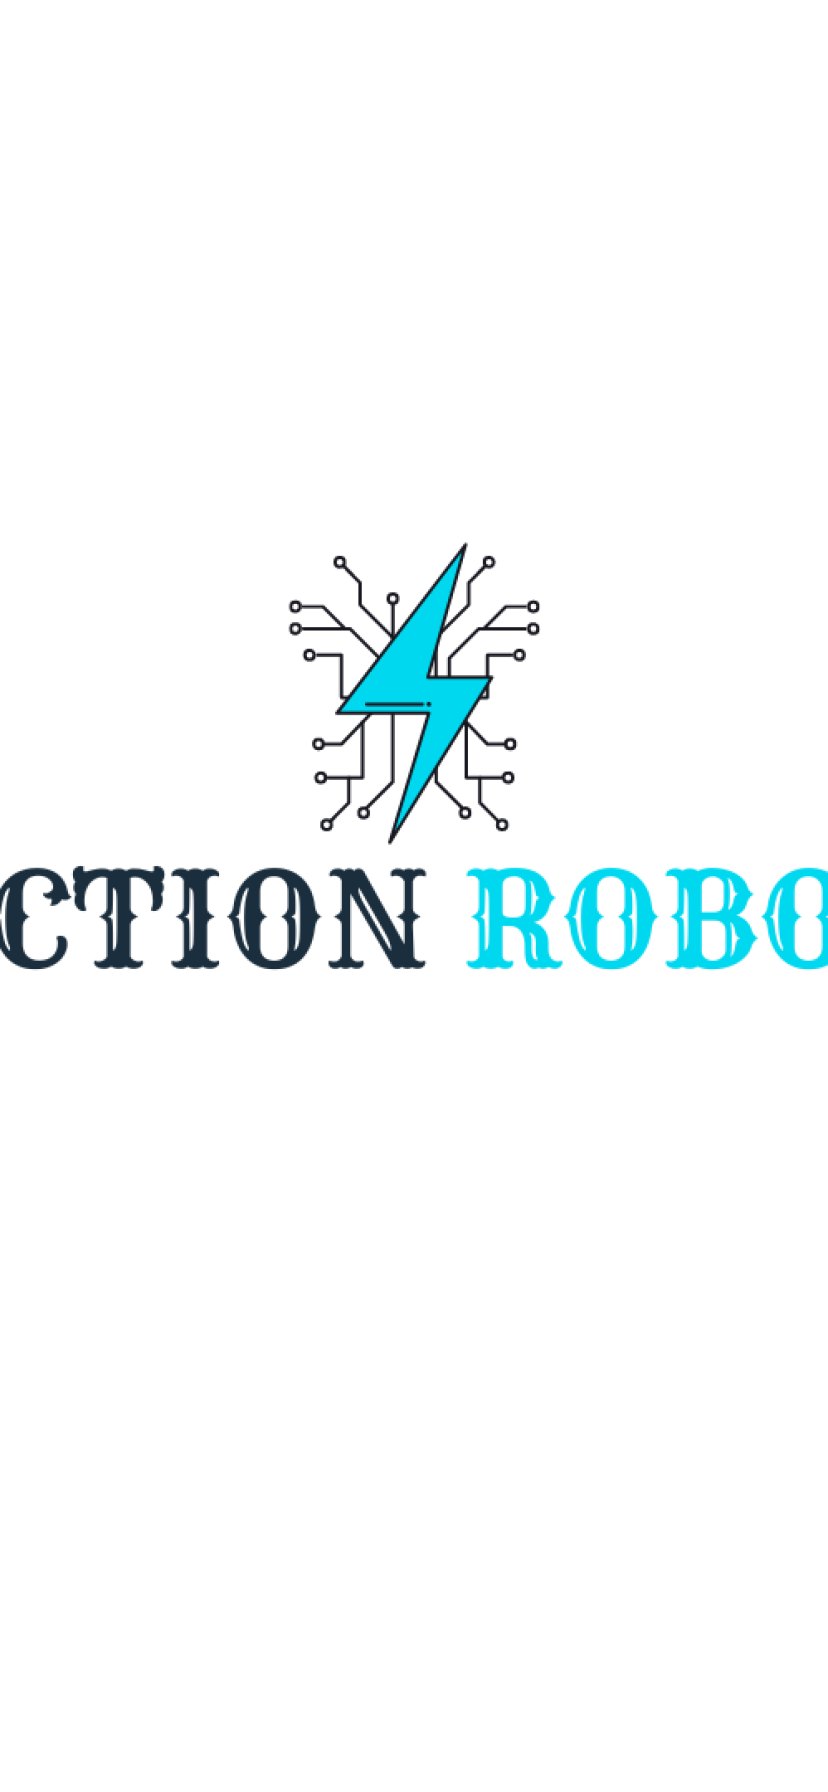 Auctionrobots.com domain name for sale